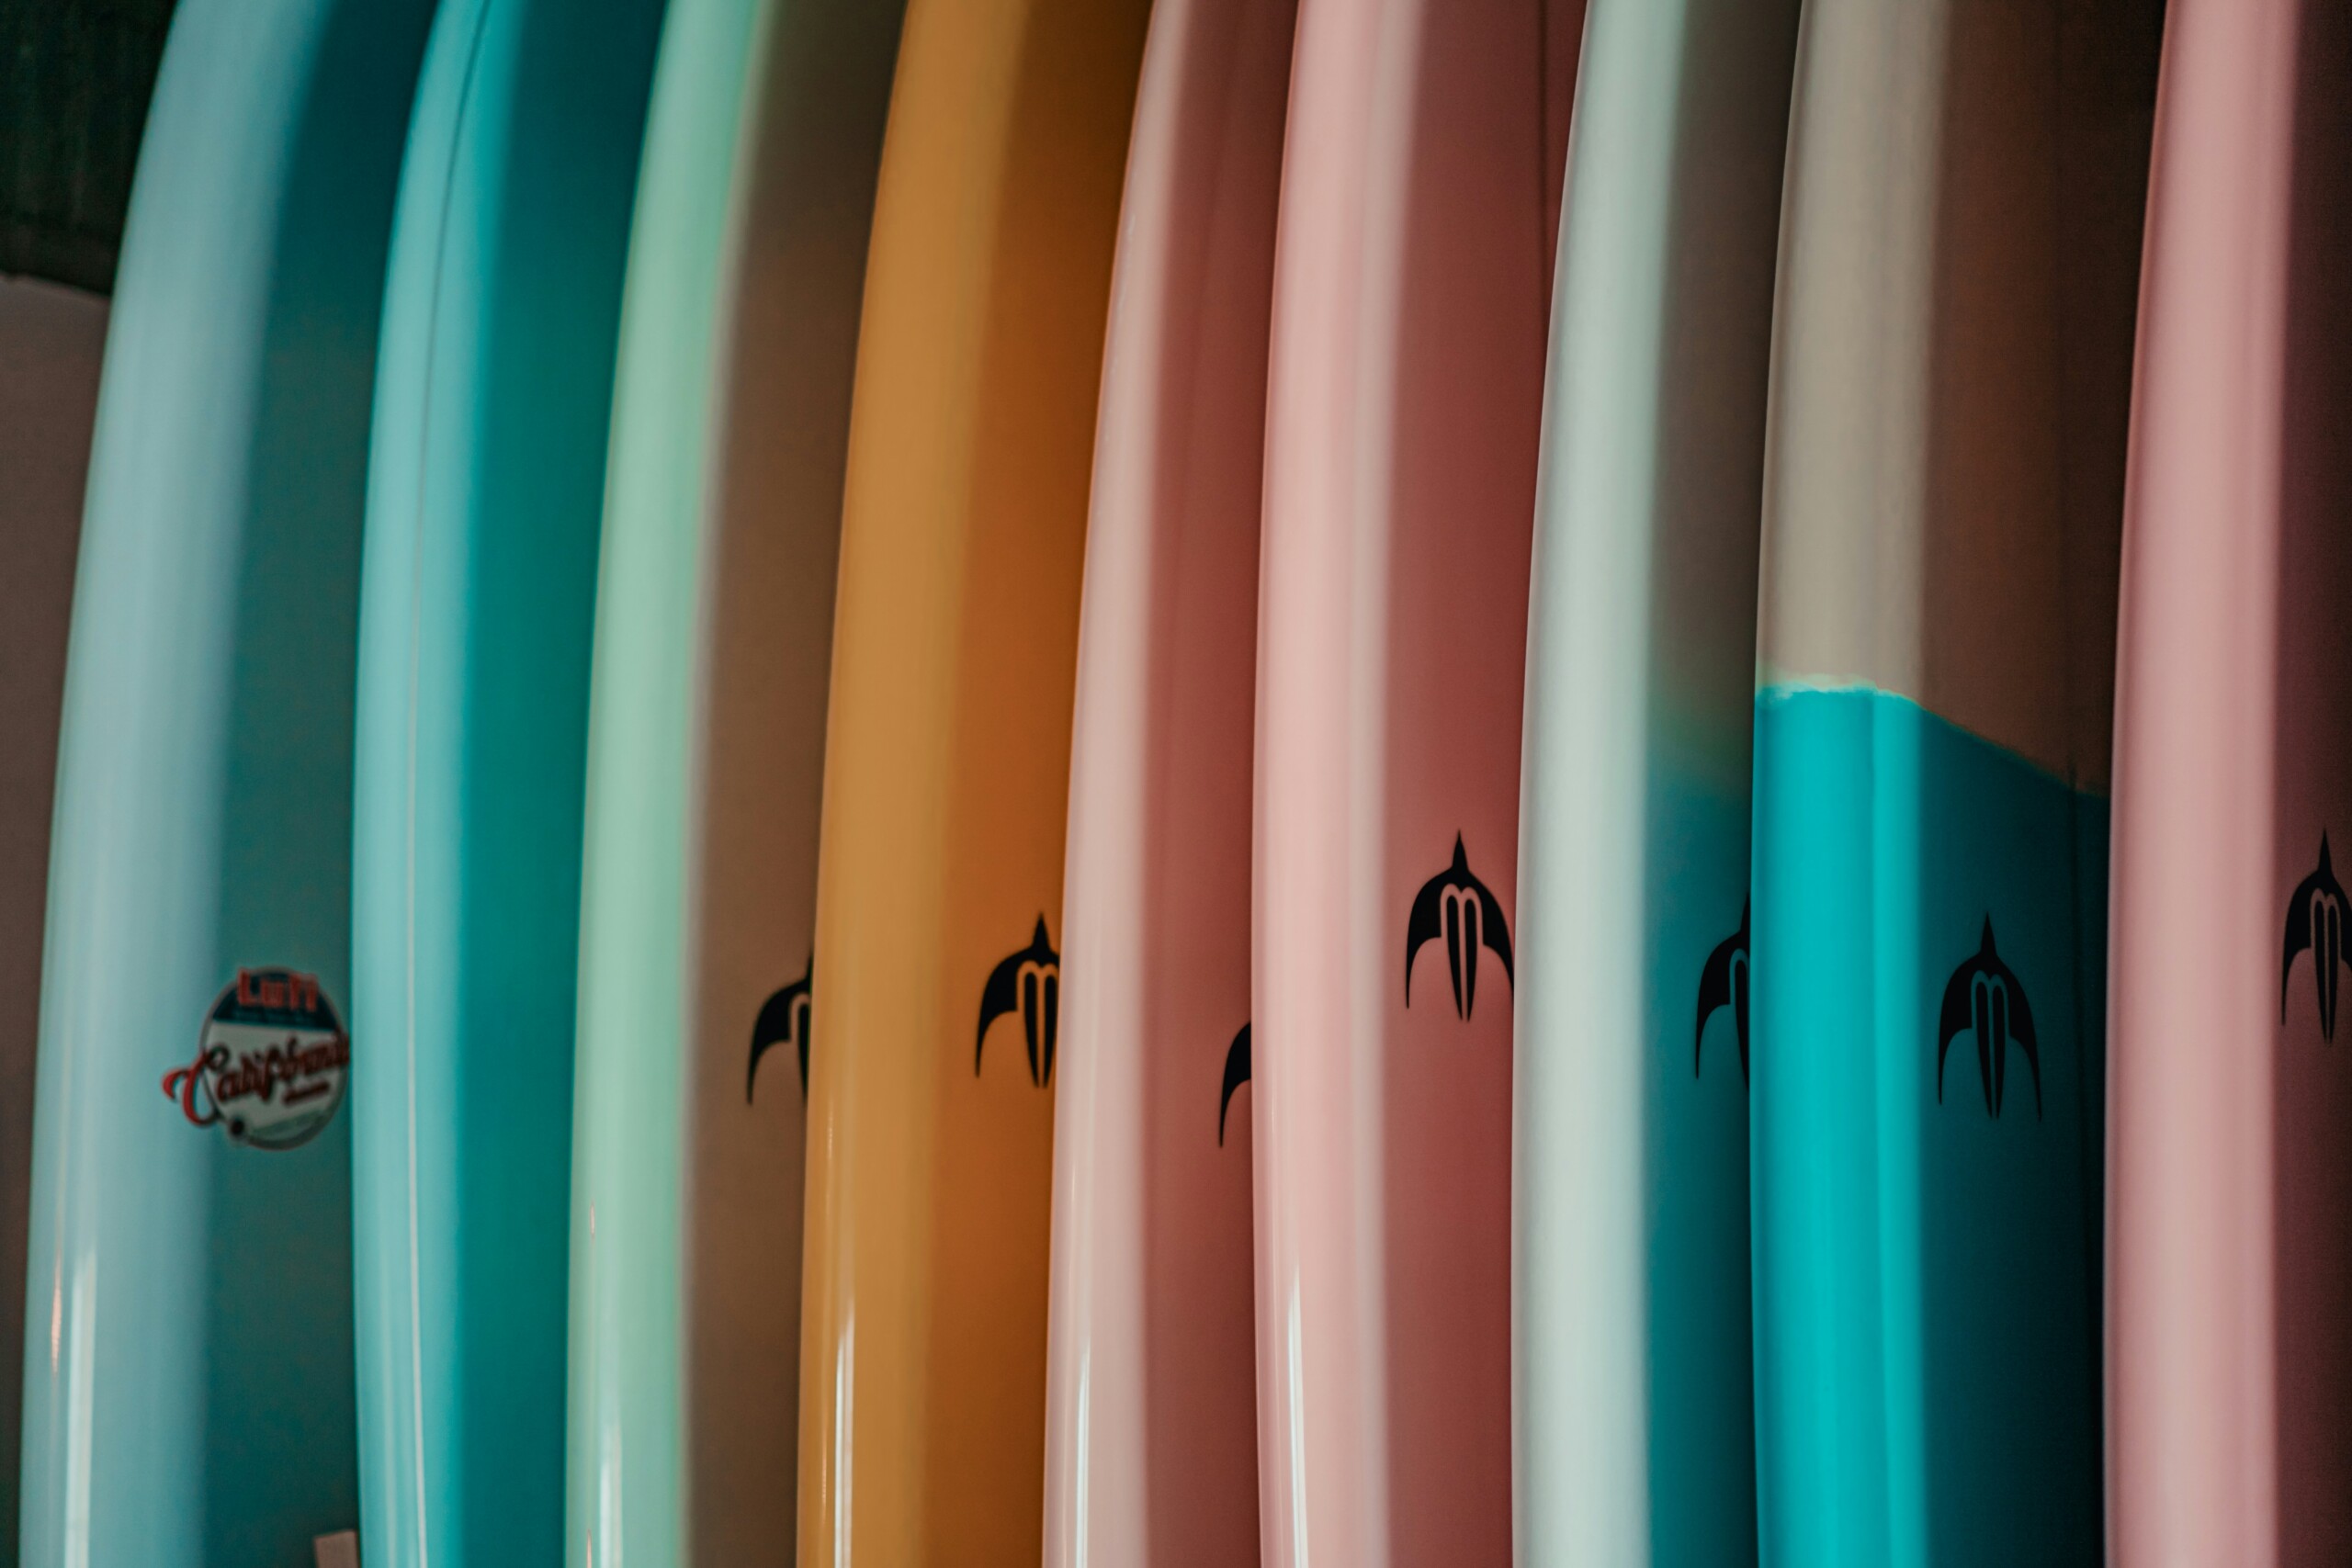 surfboard storage